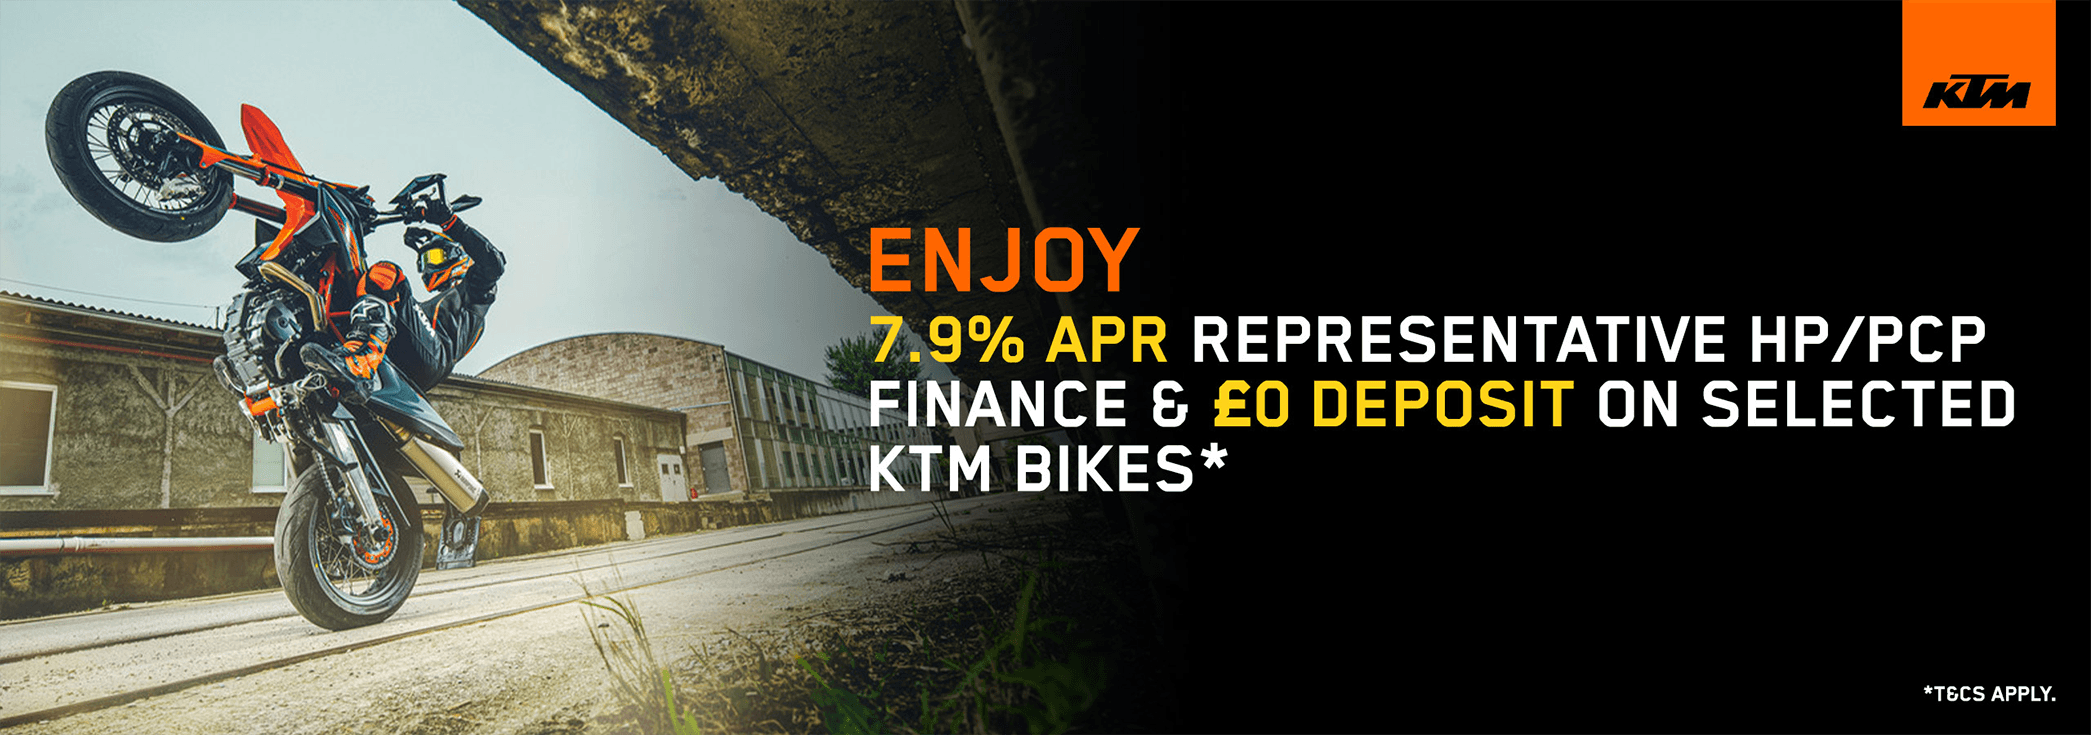 New KTM finance offer on selected bikes